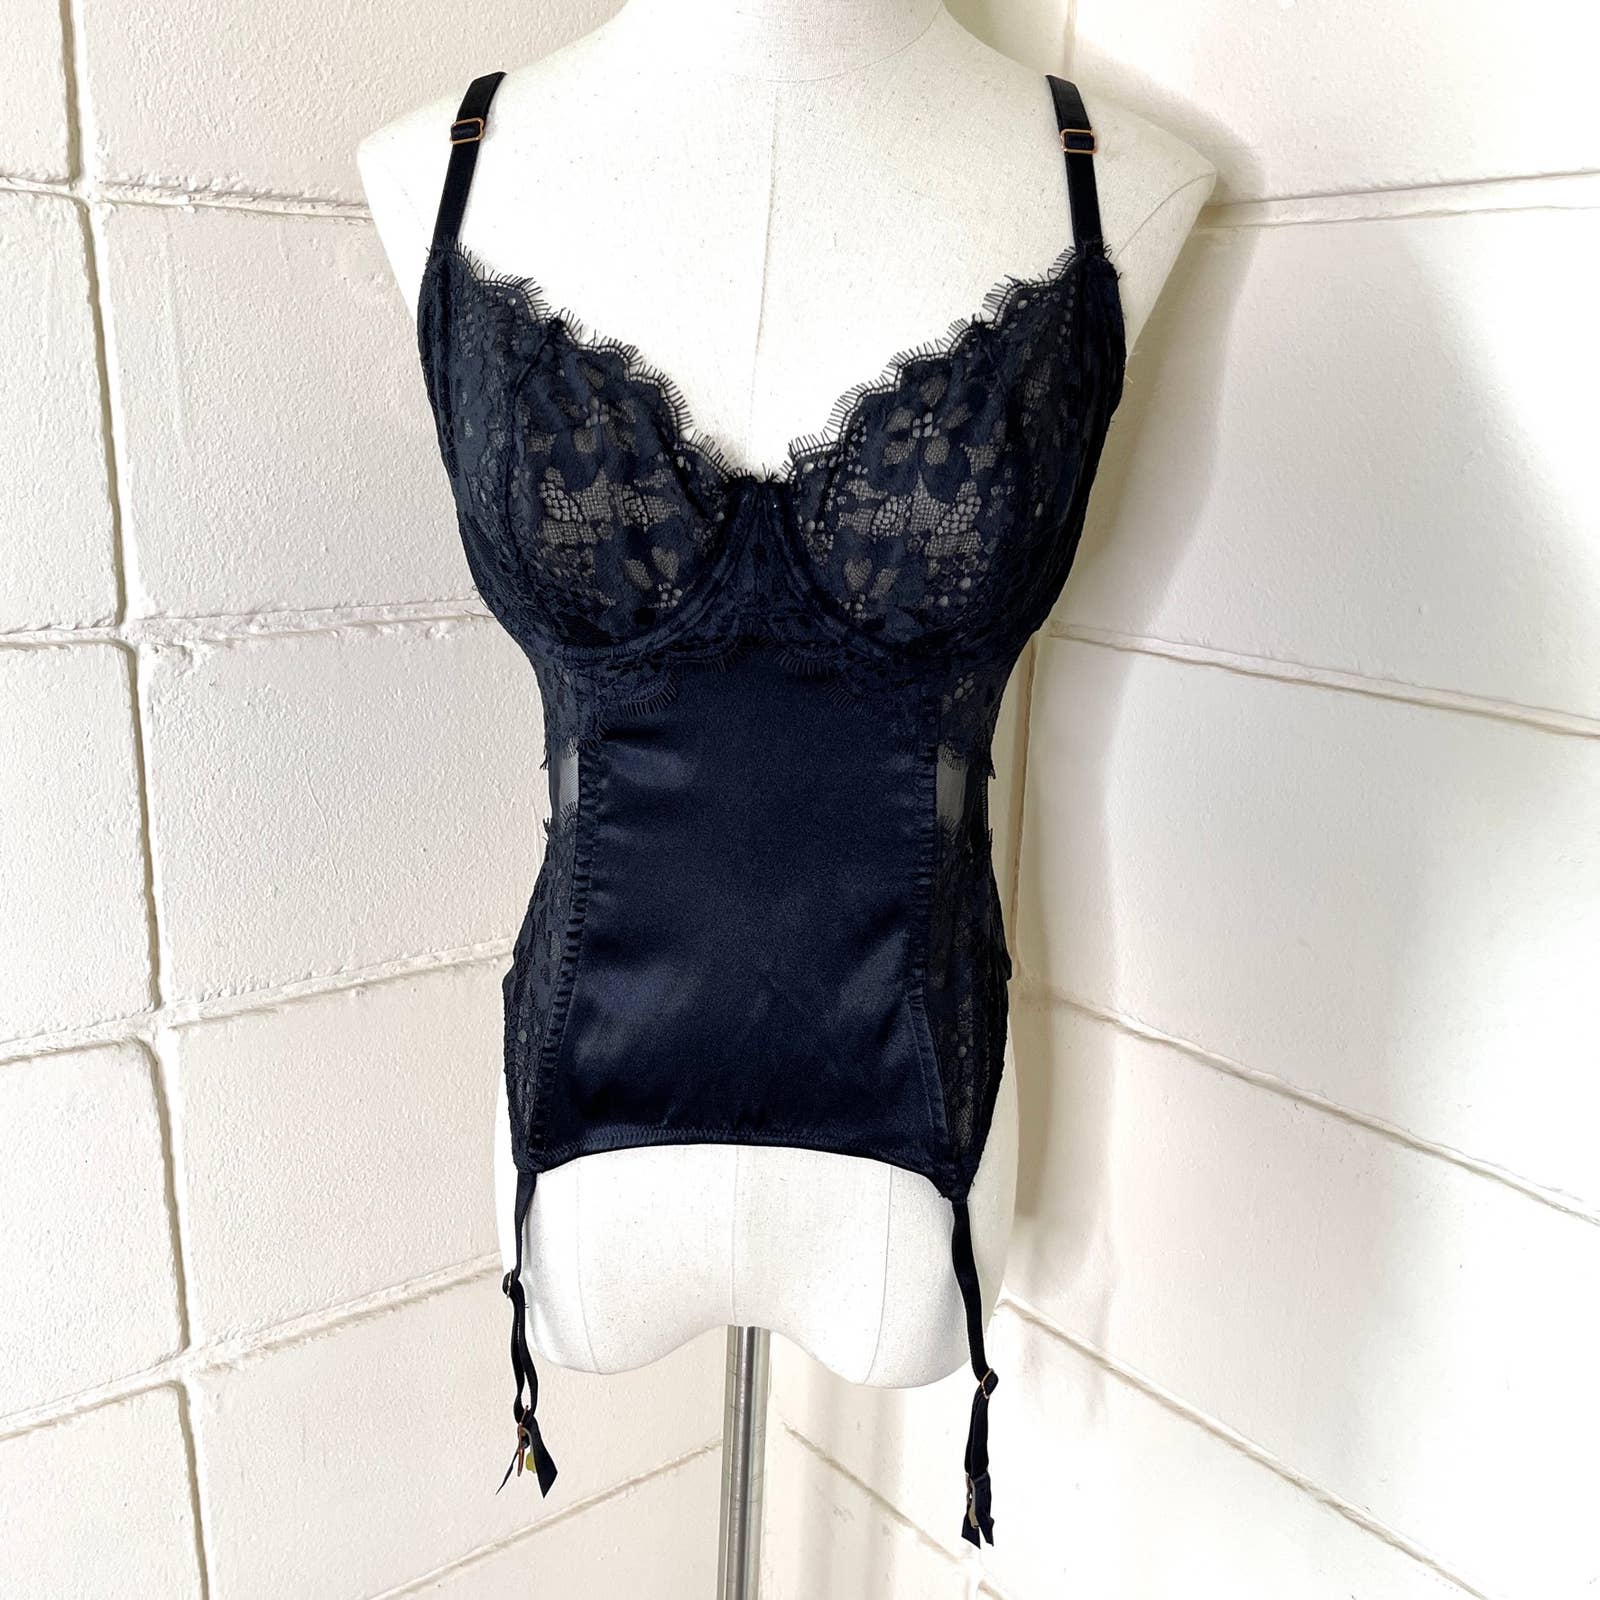 Victoria's Secret Bodysuit 34D Black Lace Teddy Sheer Lingerie 90s